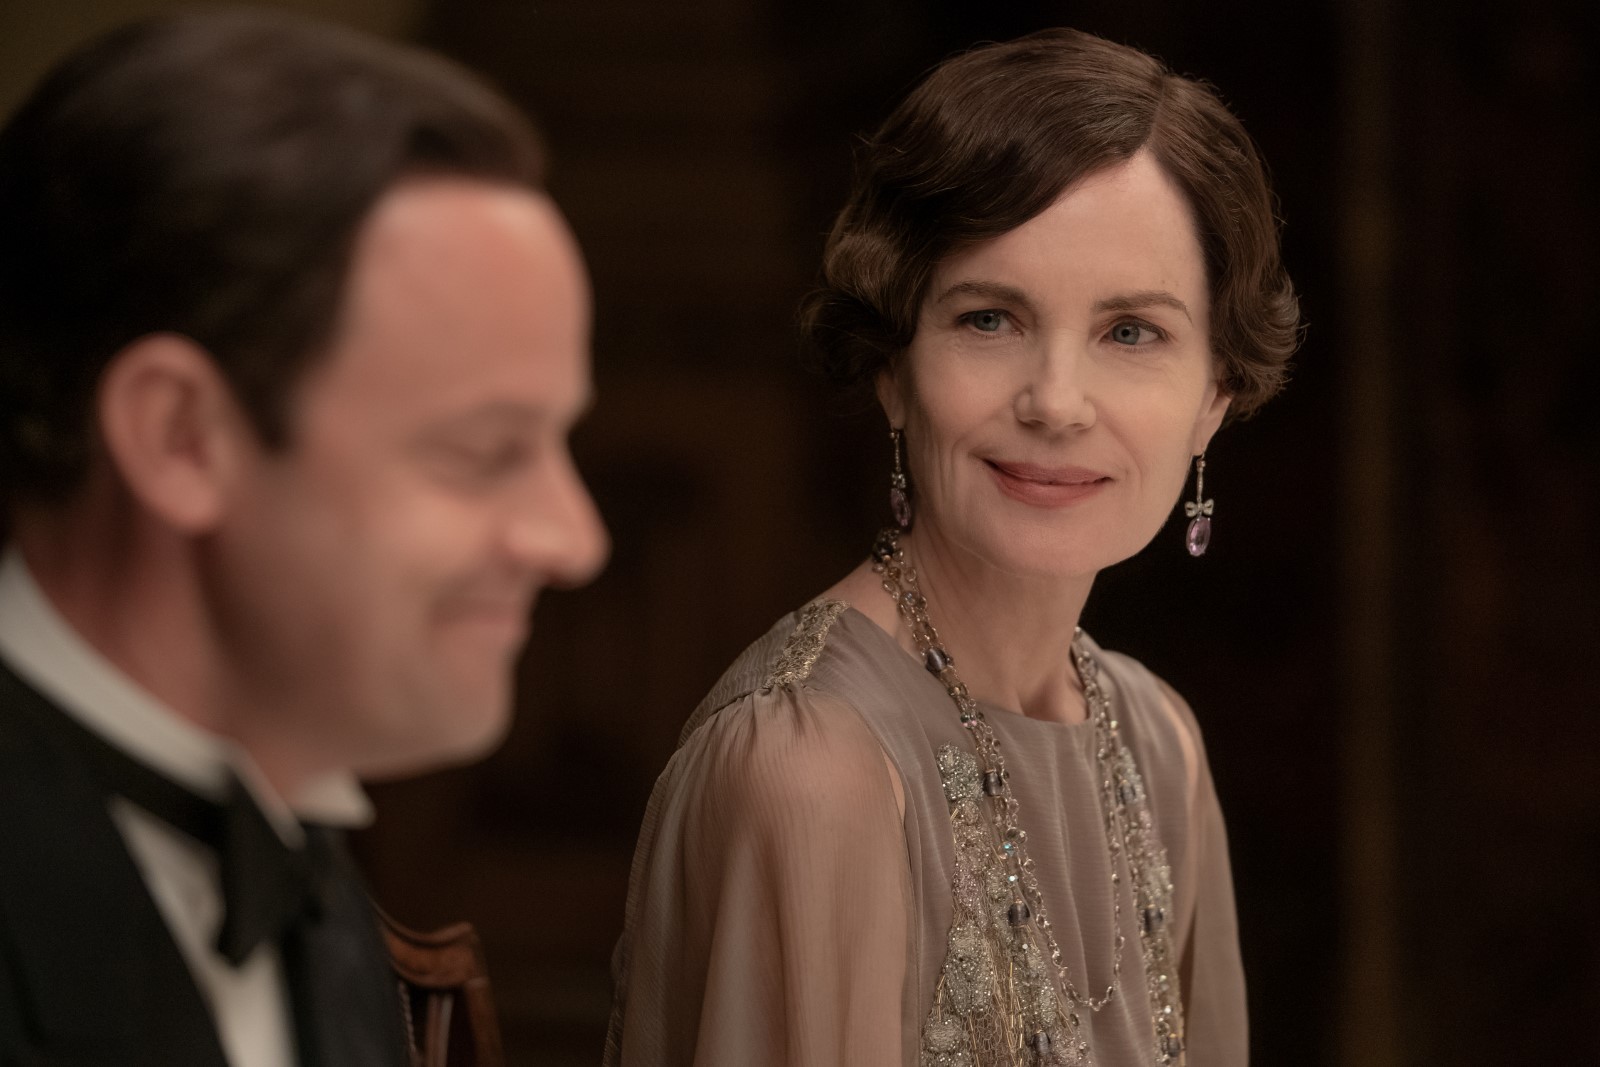 Szenenbild 16 vom Film Downton Abbey 2: Eine neue Ära 